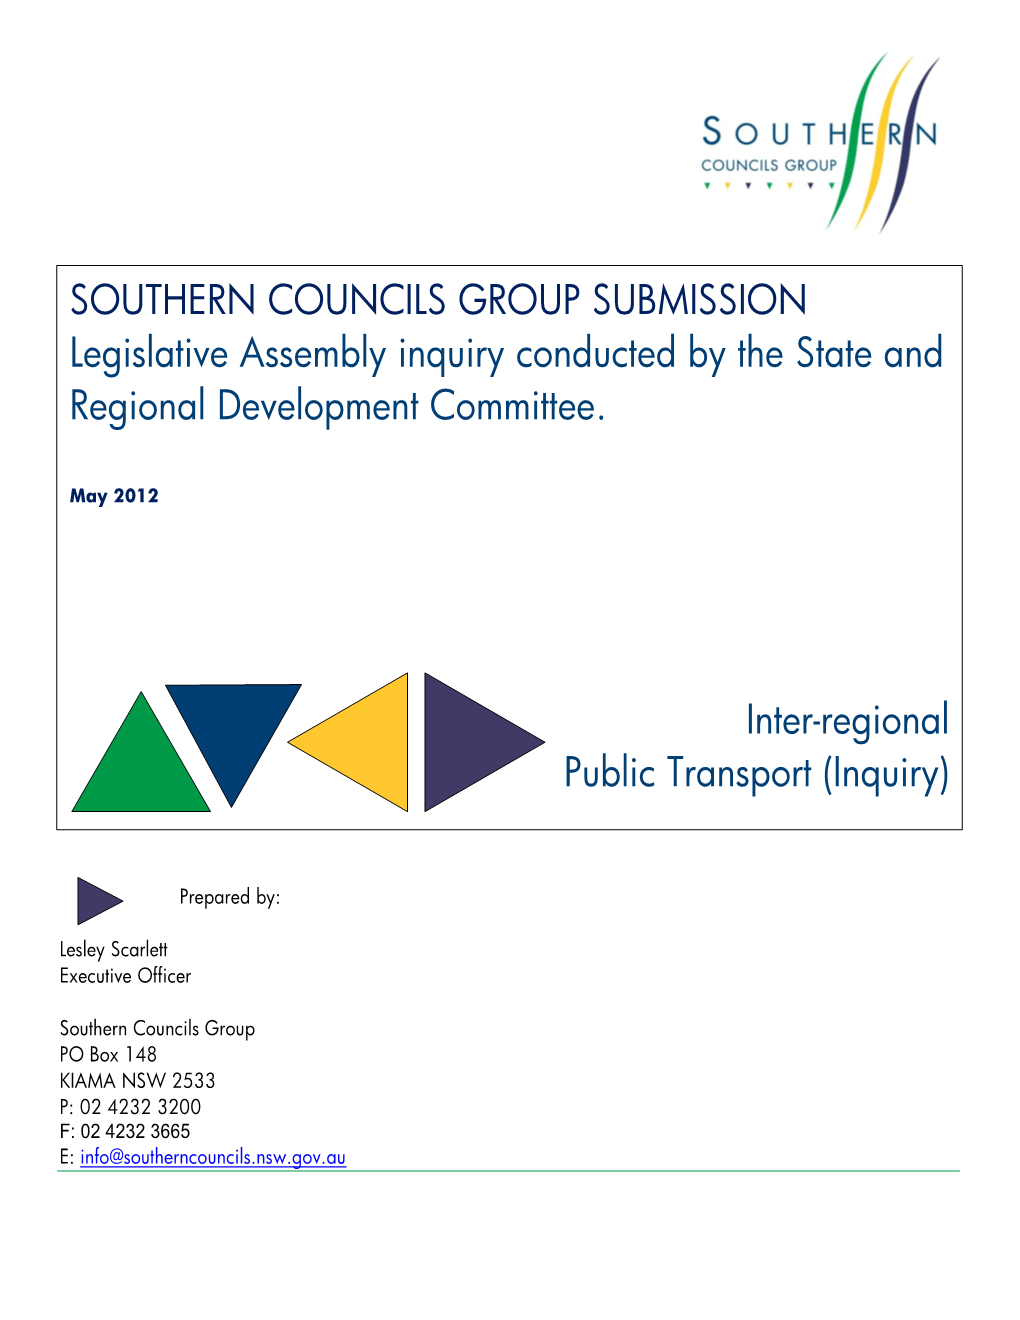 Inter-Regional Public Transport Inquiry 2